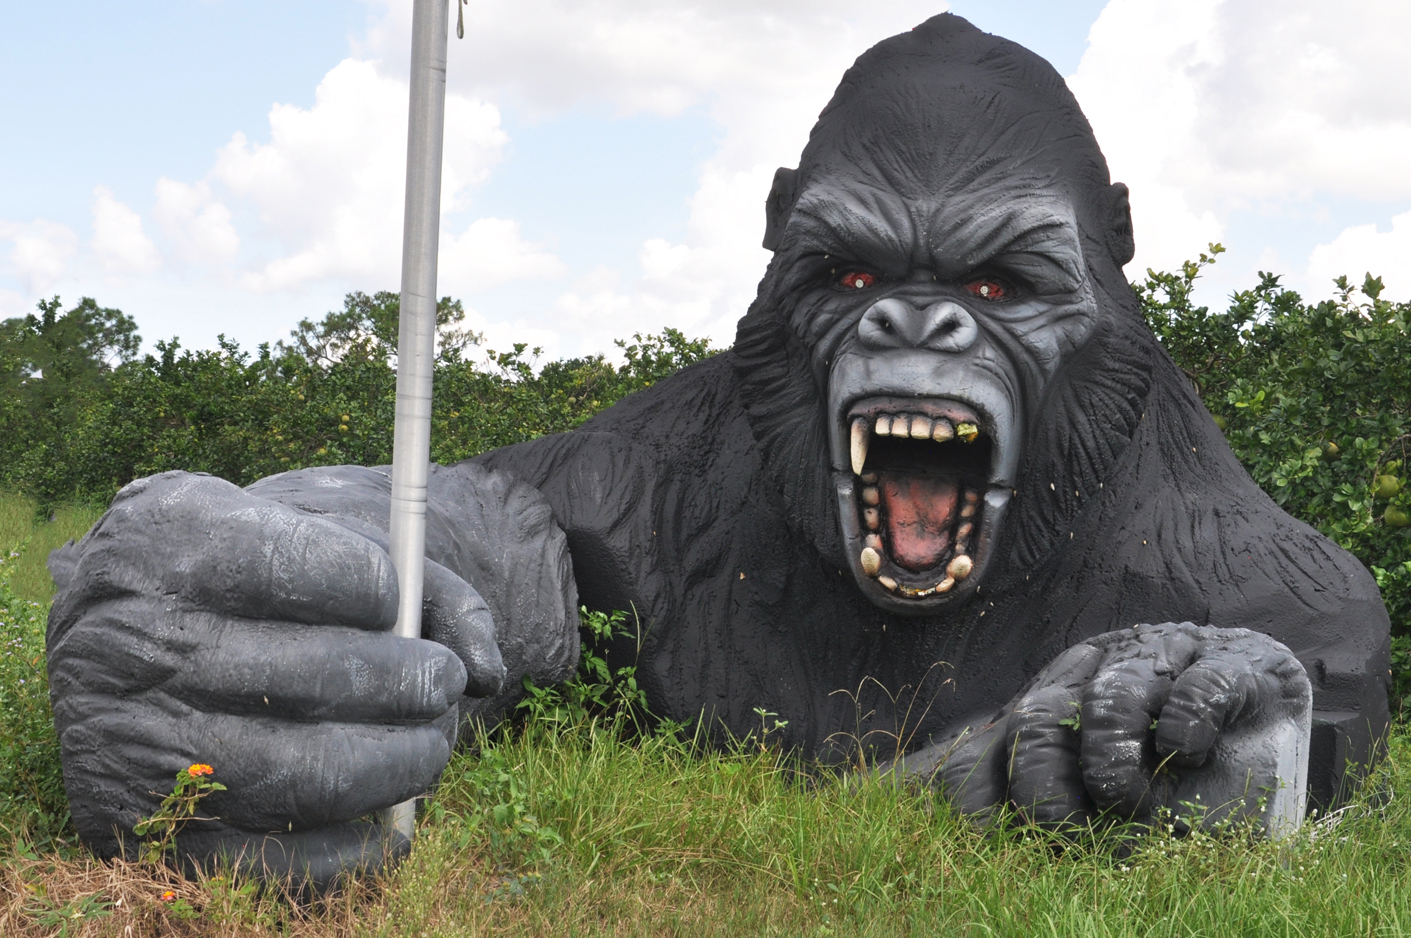 Gorilla & Monkey Statues | RoadsideArchitecture.com